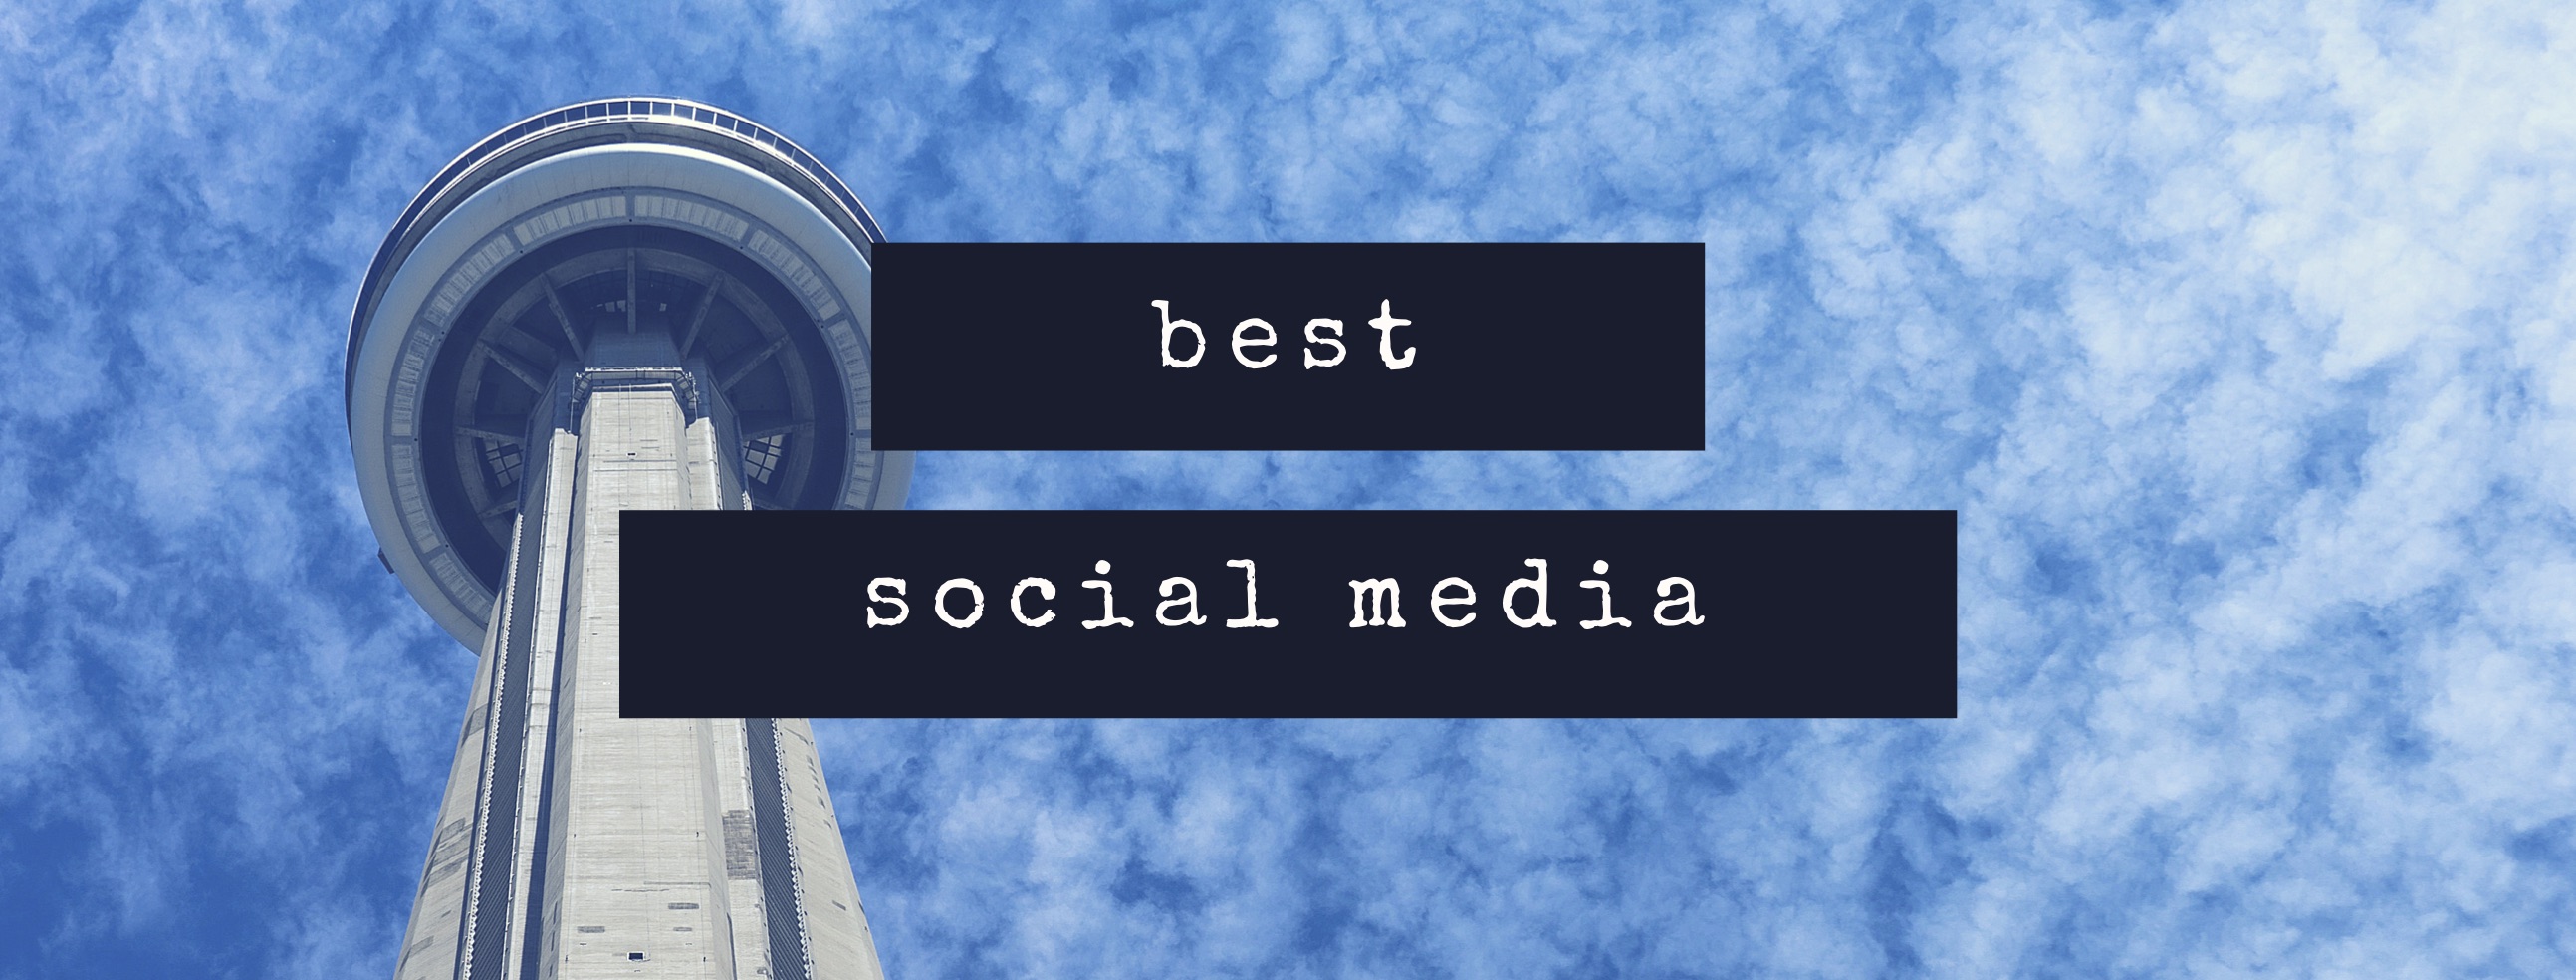 Best social media platform